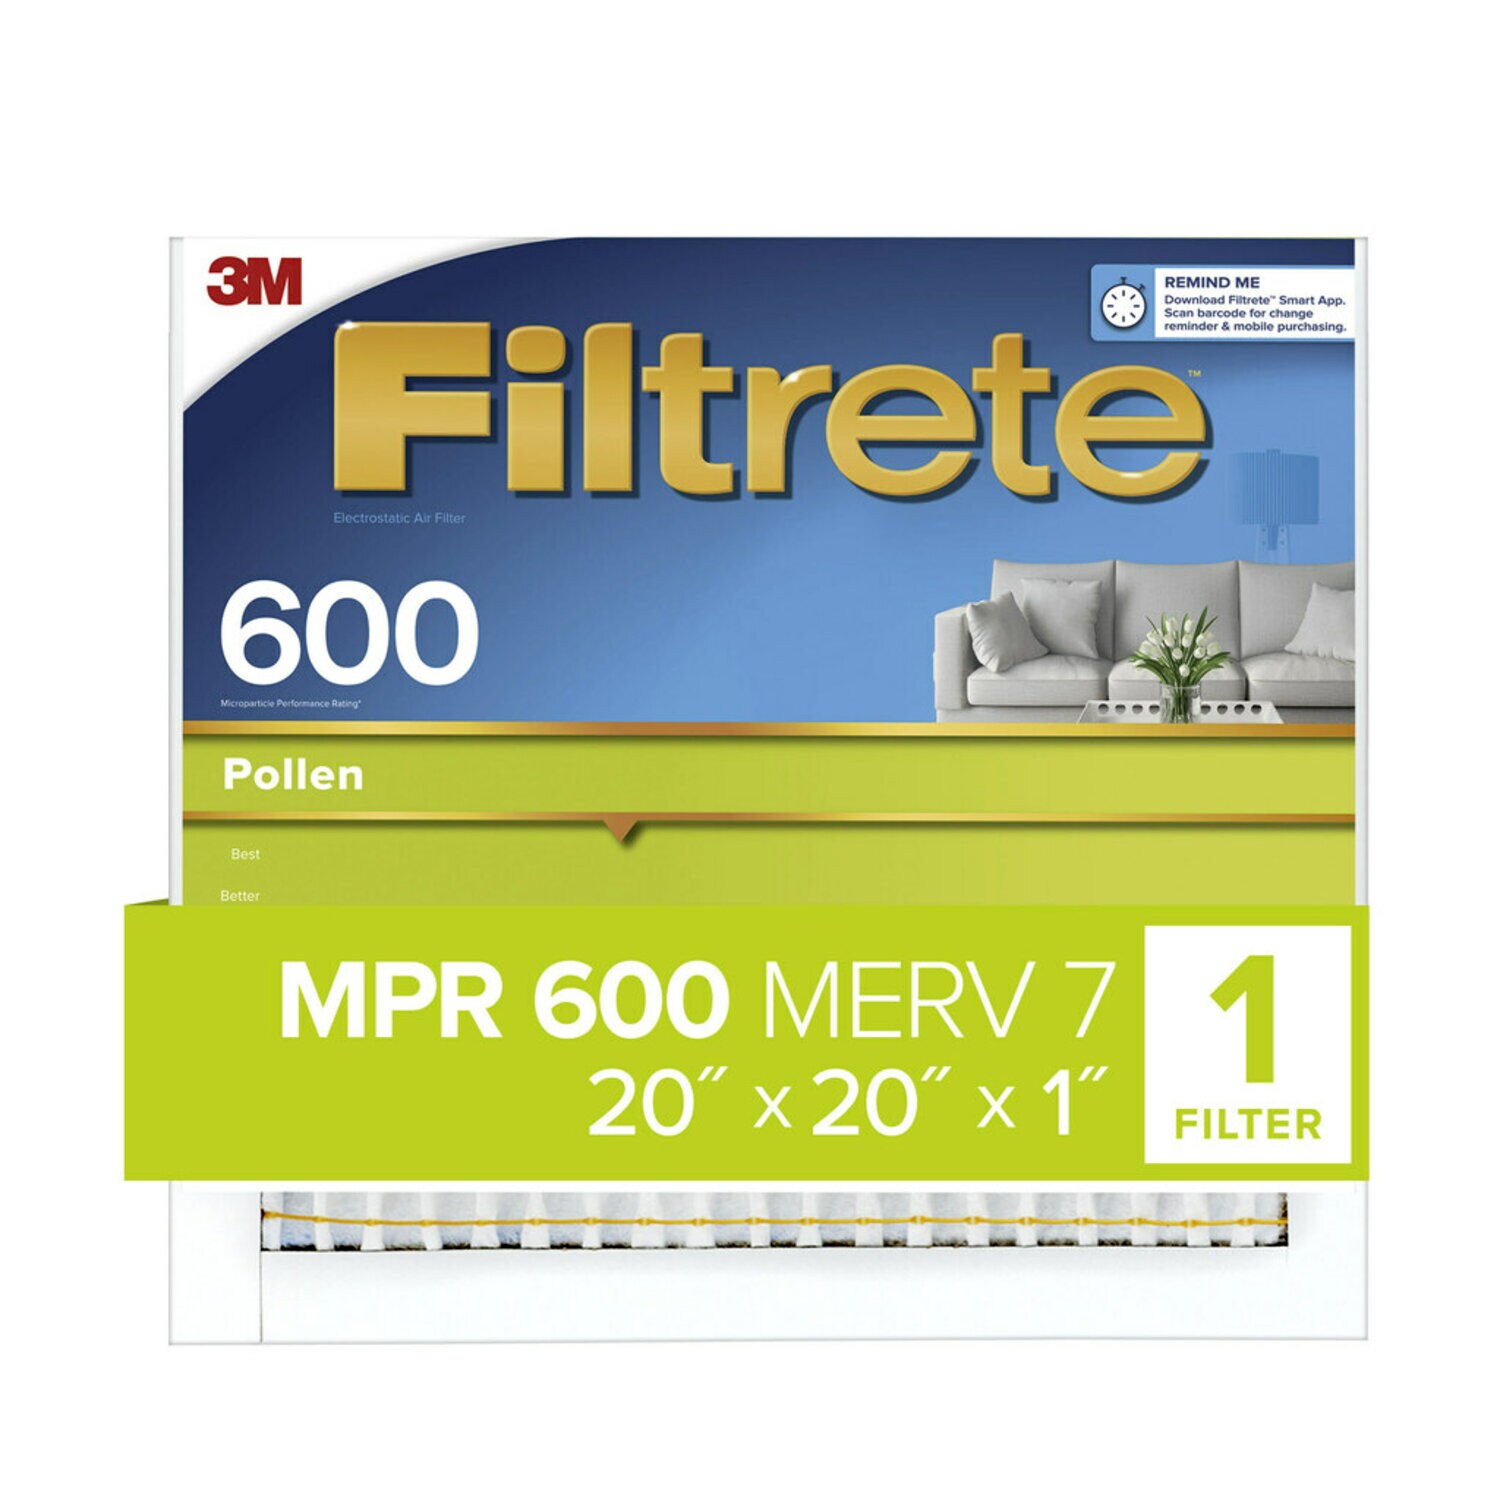 7100183958 - Filtrete Pollen Air Filter, 600 MPR, 9832-4, 20 in x 20 in x 1 in (50.8
cm x 50.8 cm x 2.54 cm)